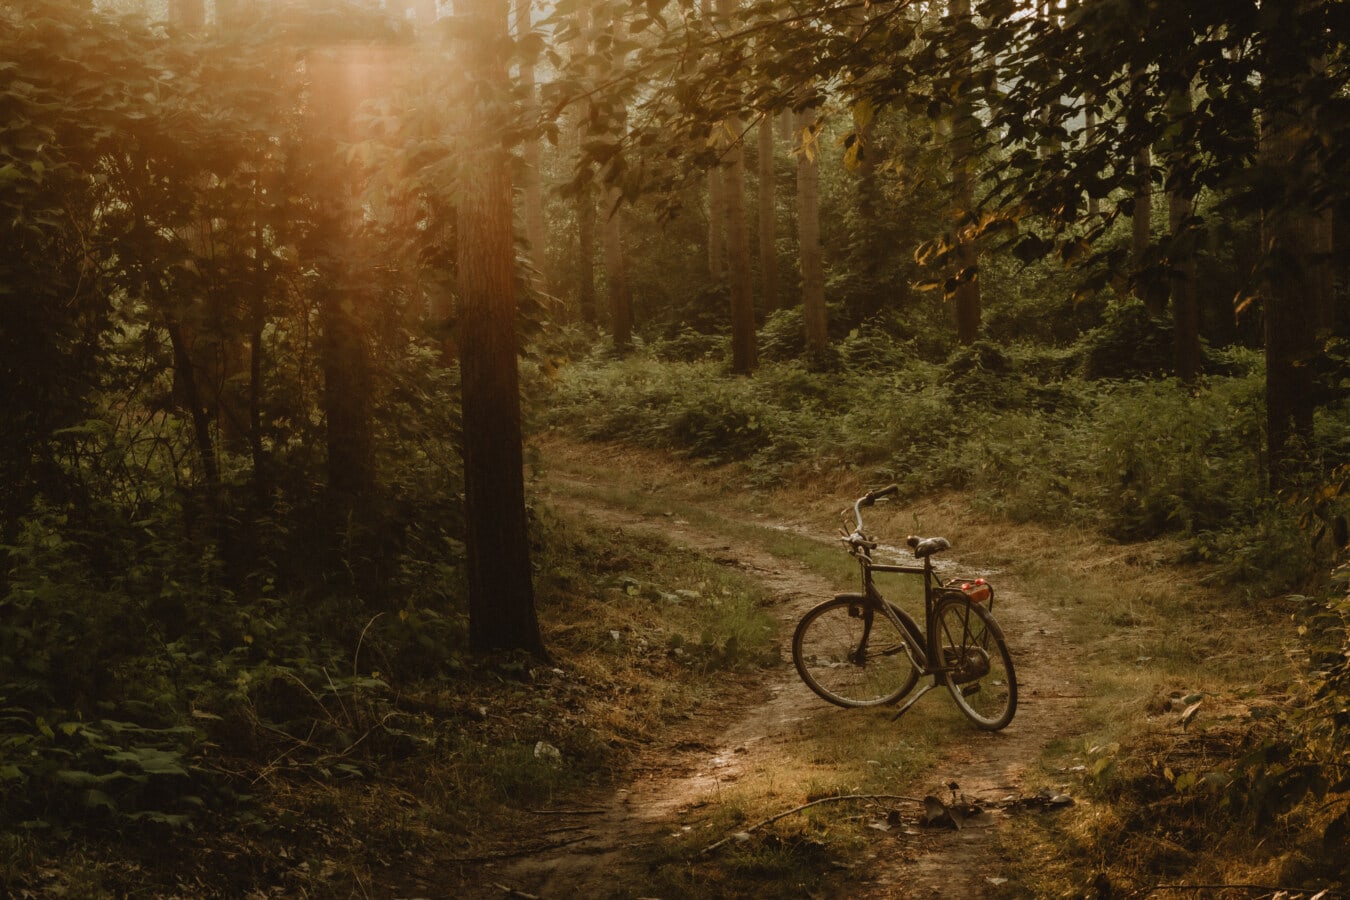 estrada da floresta, luz de fundo, pôr do sol, estrada, bicicleta, madeira, árvore, paisagem, luz, trilha